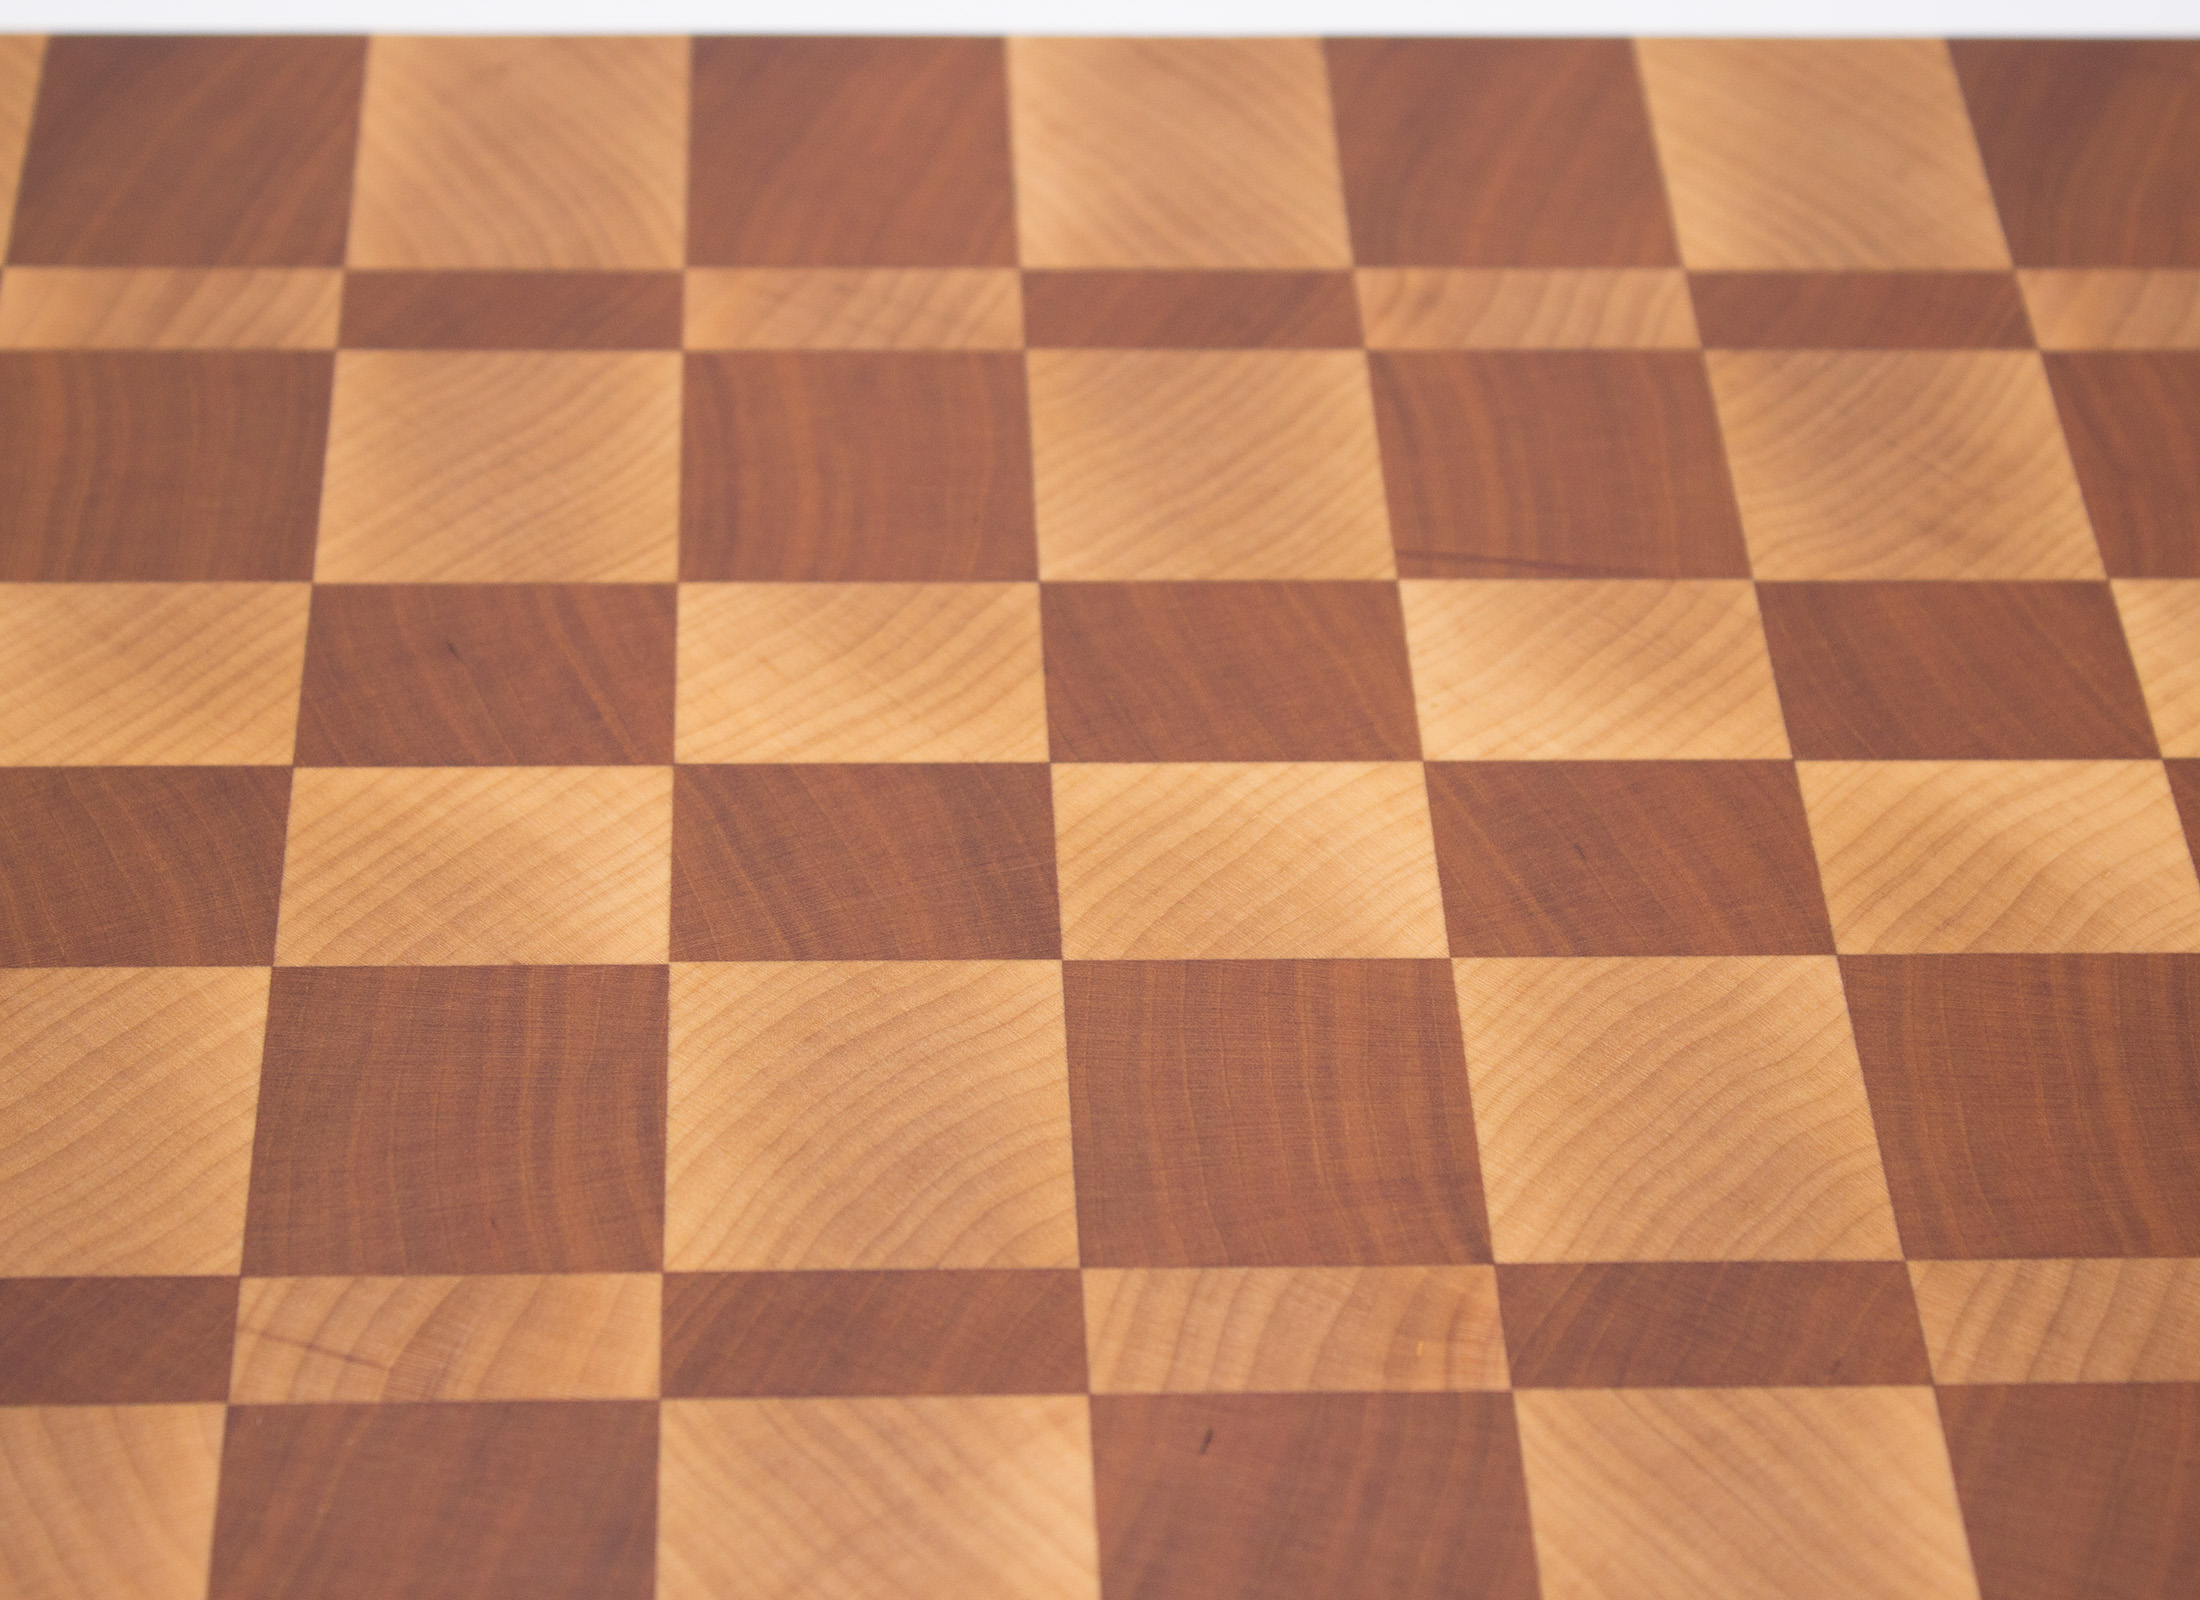 triple checker end grain cutting board - The Fine Grainery